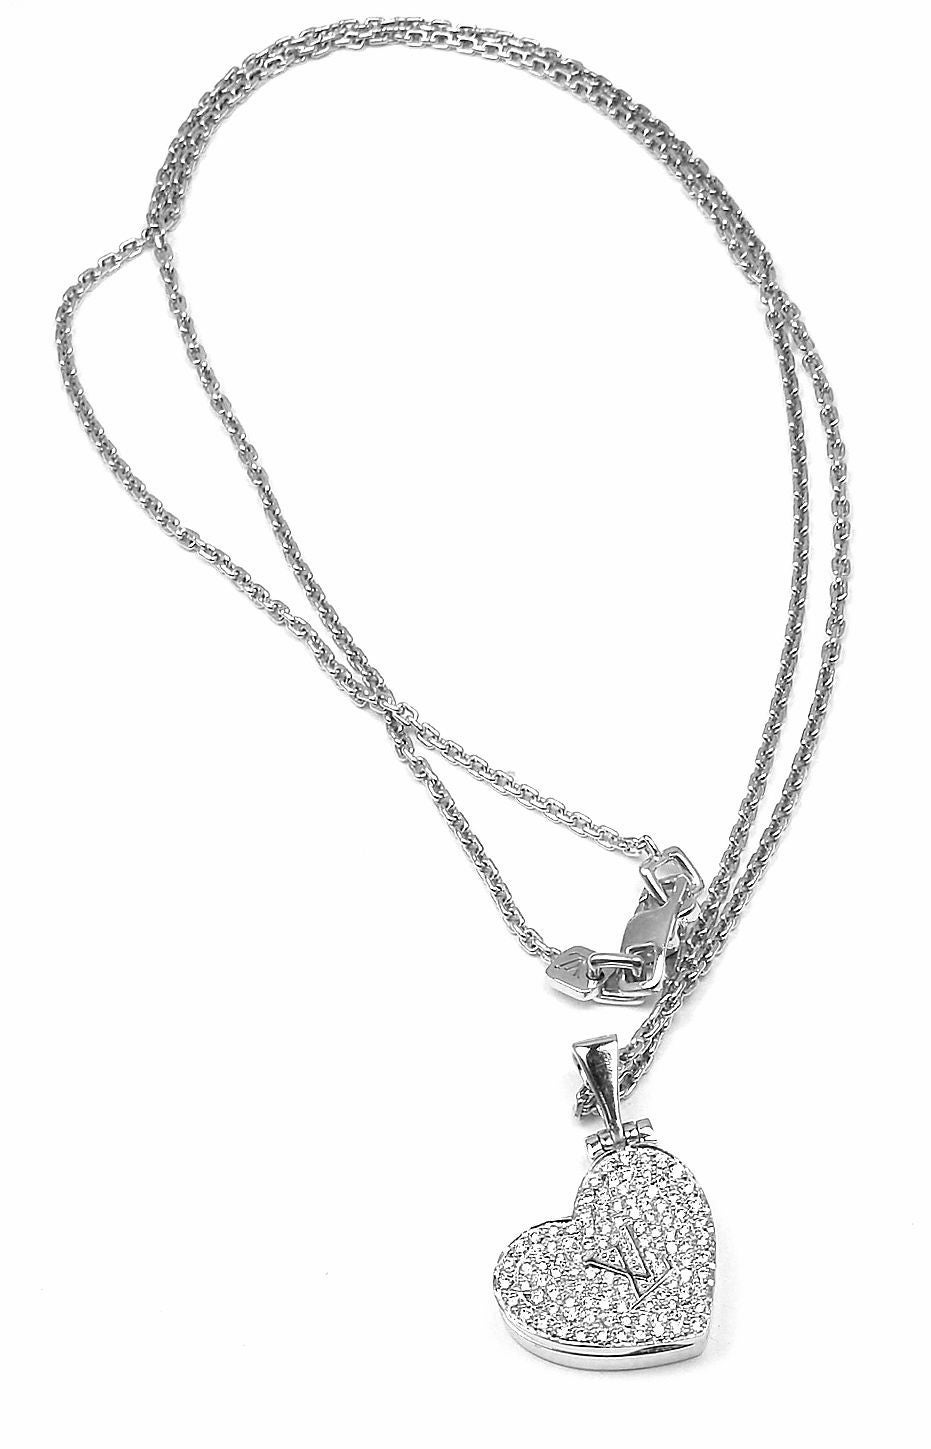 18k White Gold Diamond Heart Locket Pendant Necklace by Louis Vuitton. 
With 110 round brilliant cut diamonds VS1 clarity 
G color

Details:
Measurements: 1